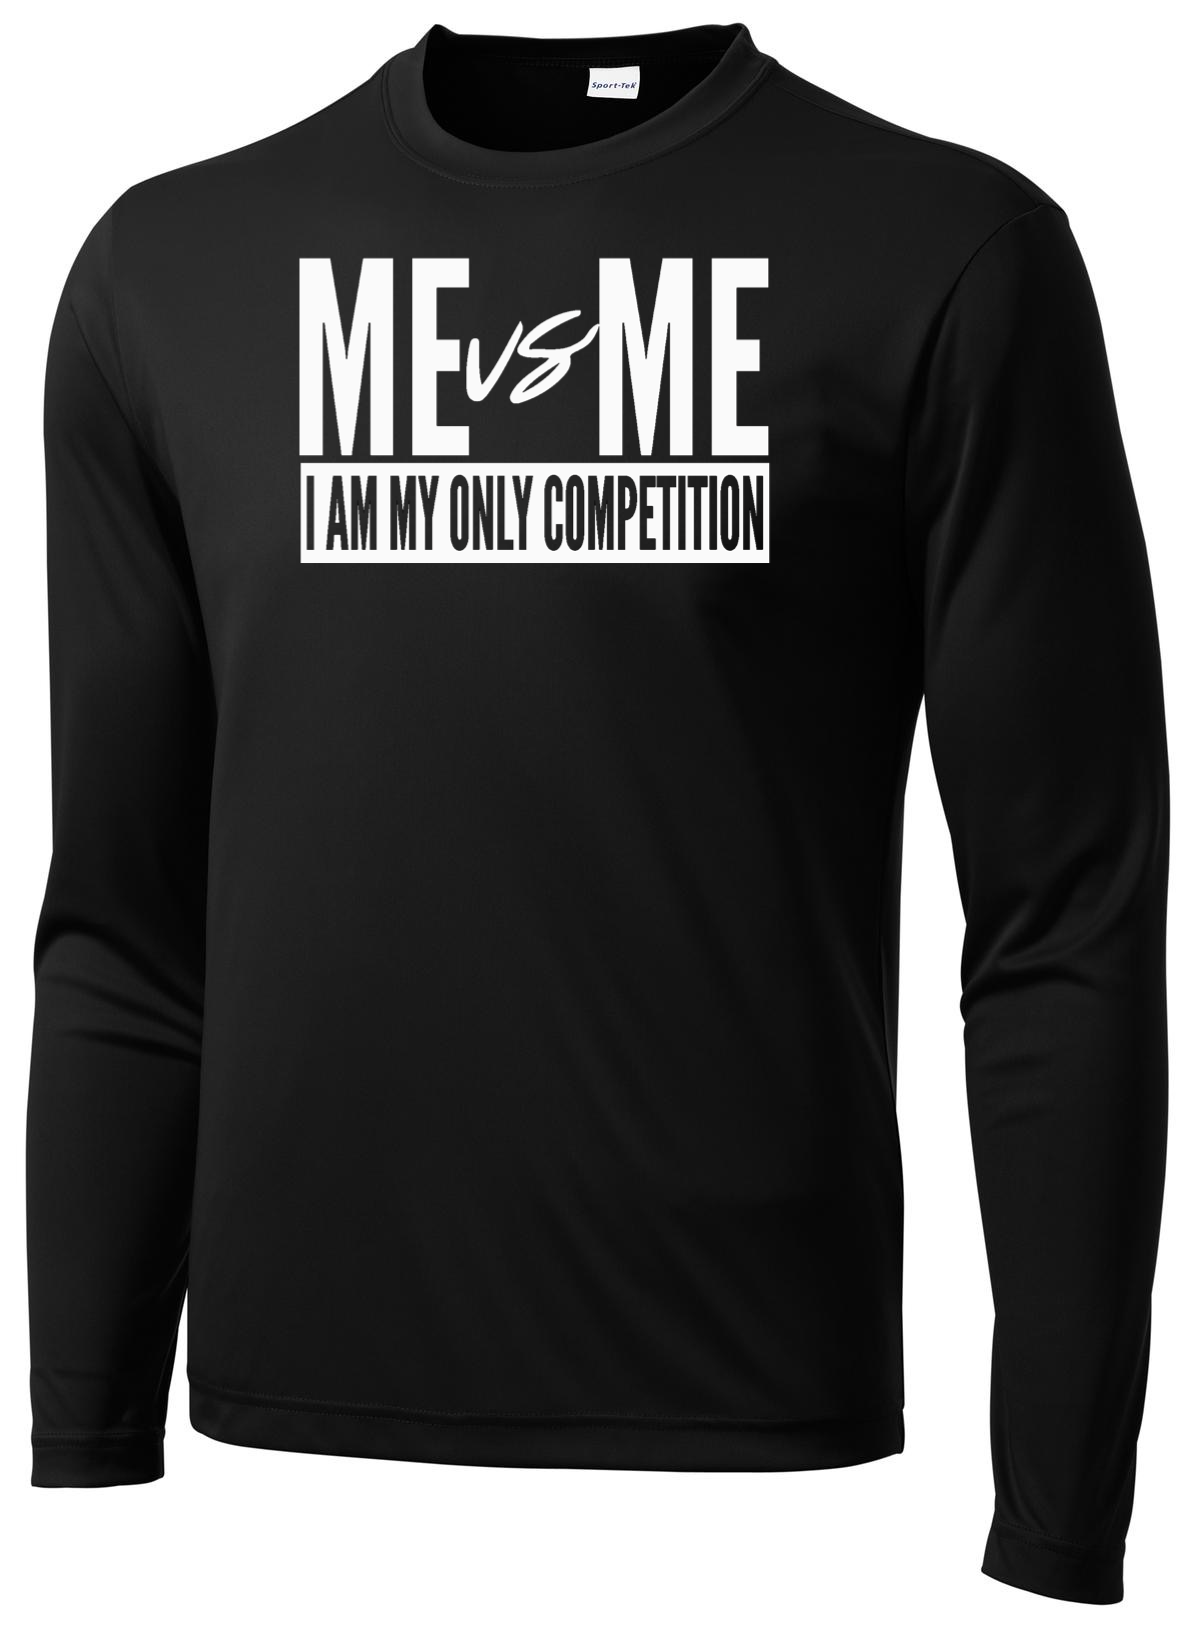 Men's Me Vs. Me Long Sleeve T-shirt